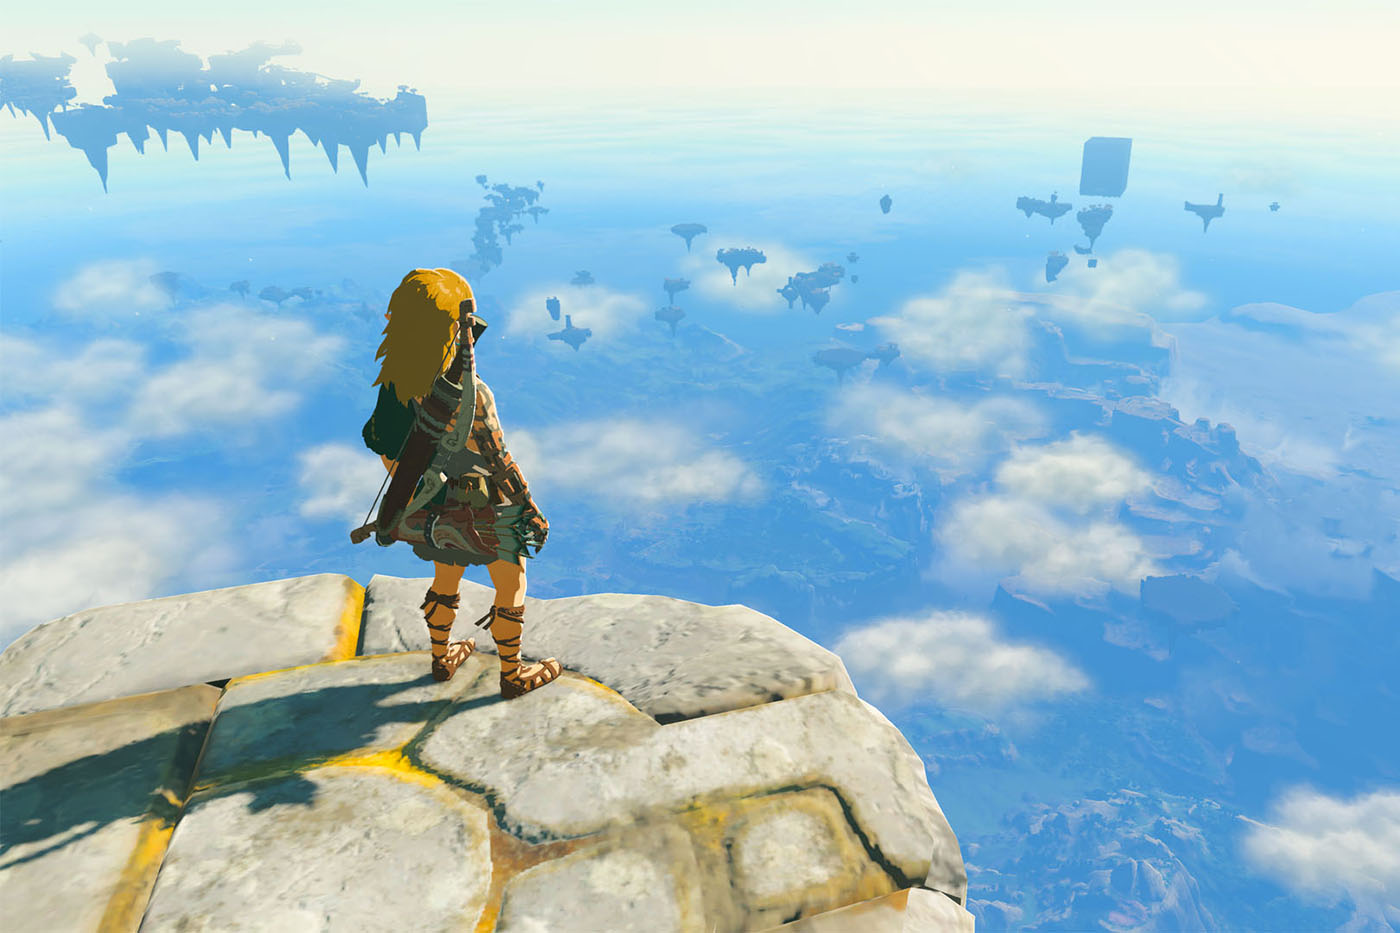 The Legend of Zelda screen capture